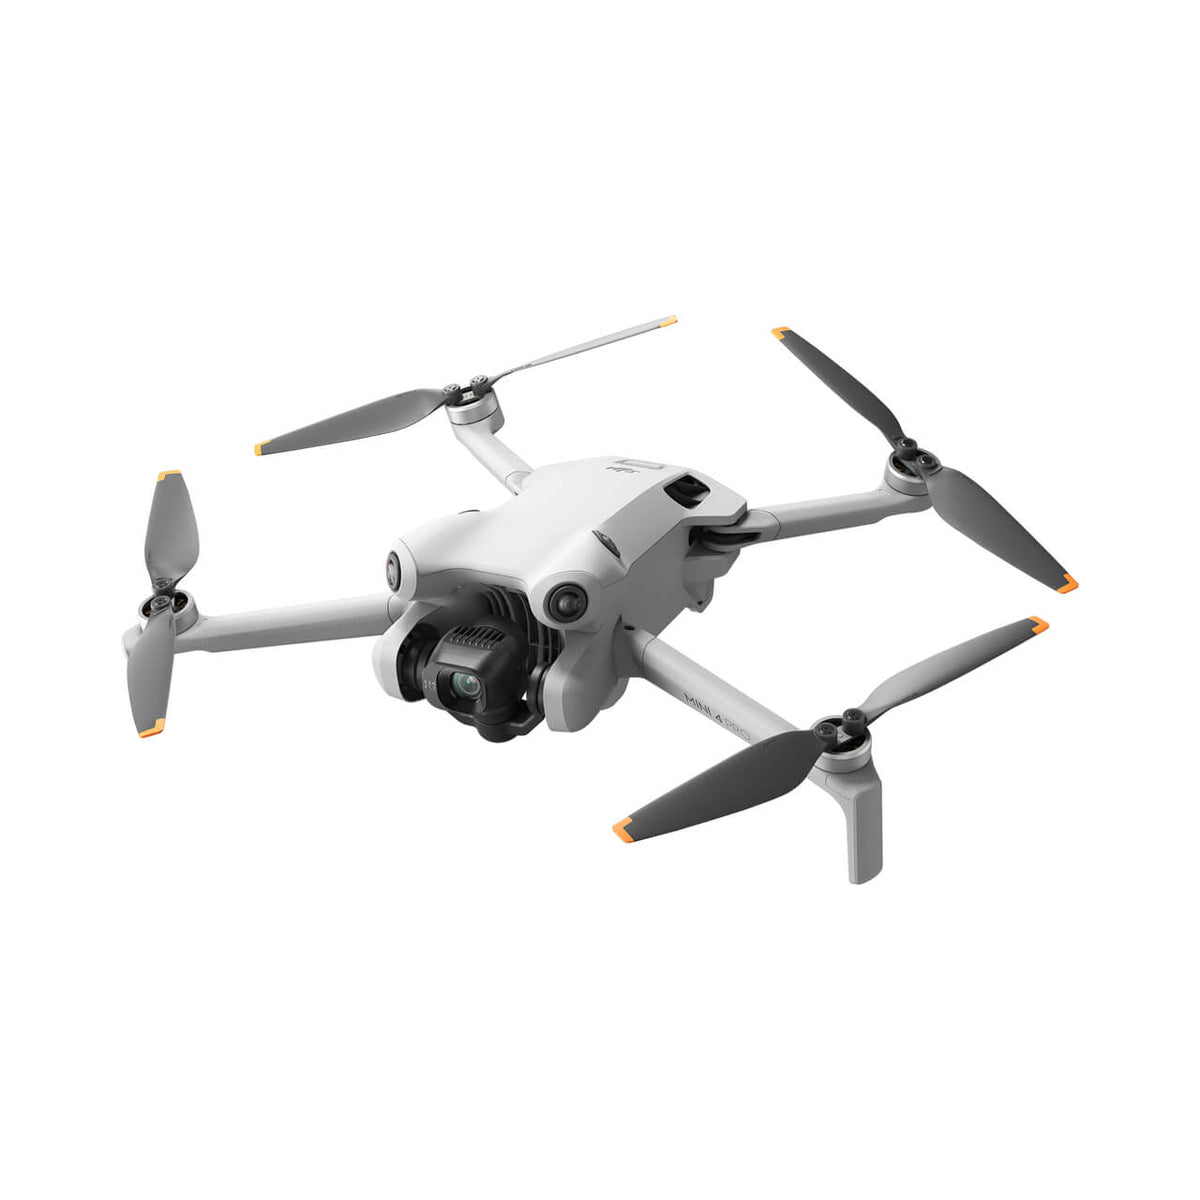 Mavic Mini de DJI, el mini dron de 249 gramos más avanzado del